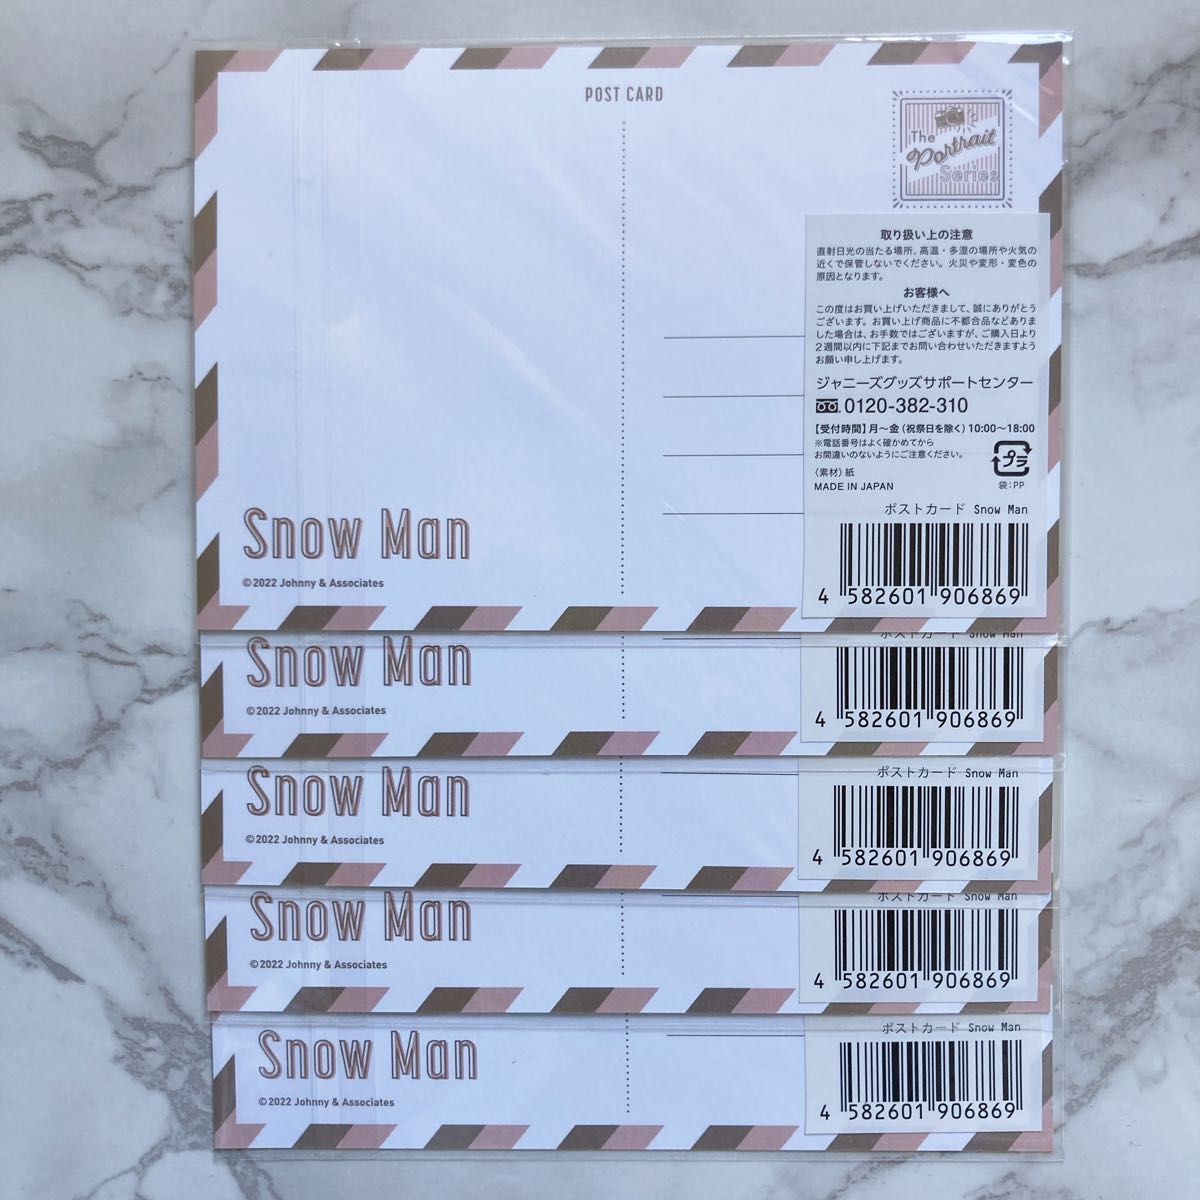 Snow Man ポストカード 5枚セット ポートレートシリーズ ジャニーズ SnowMan